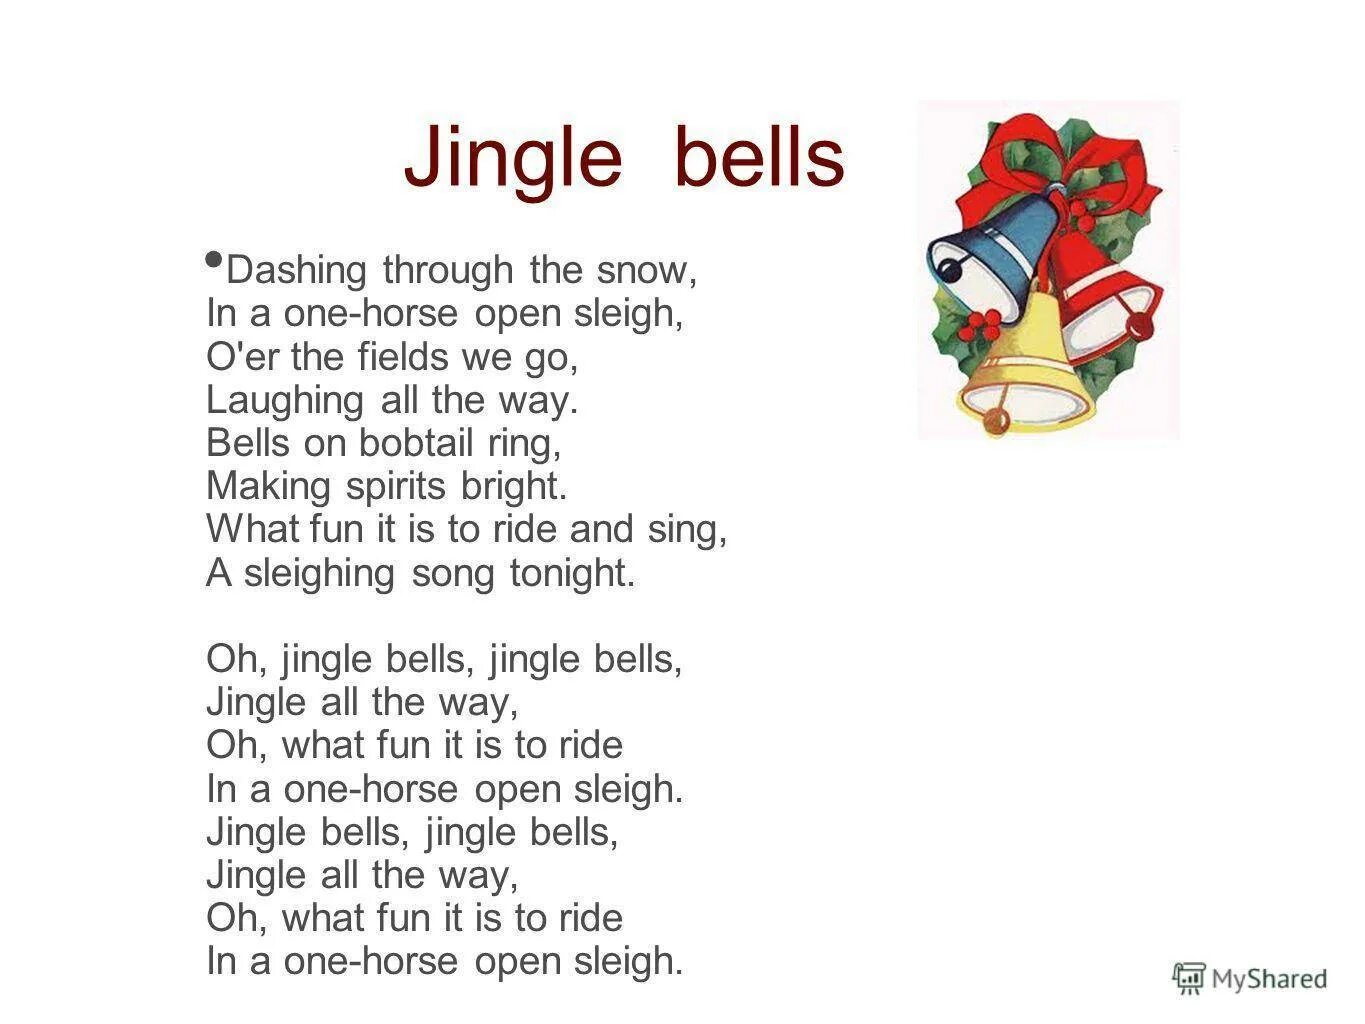 Джингл белс. Текст песни Jingle Bells. Jingle Bells перевод. Джингл белс песня. Джингл белс слова